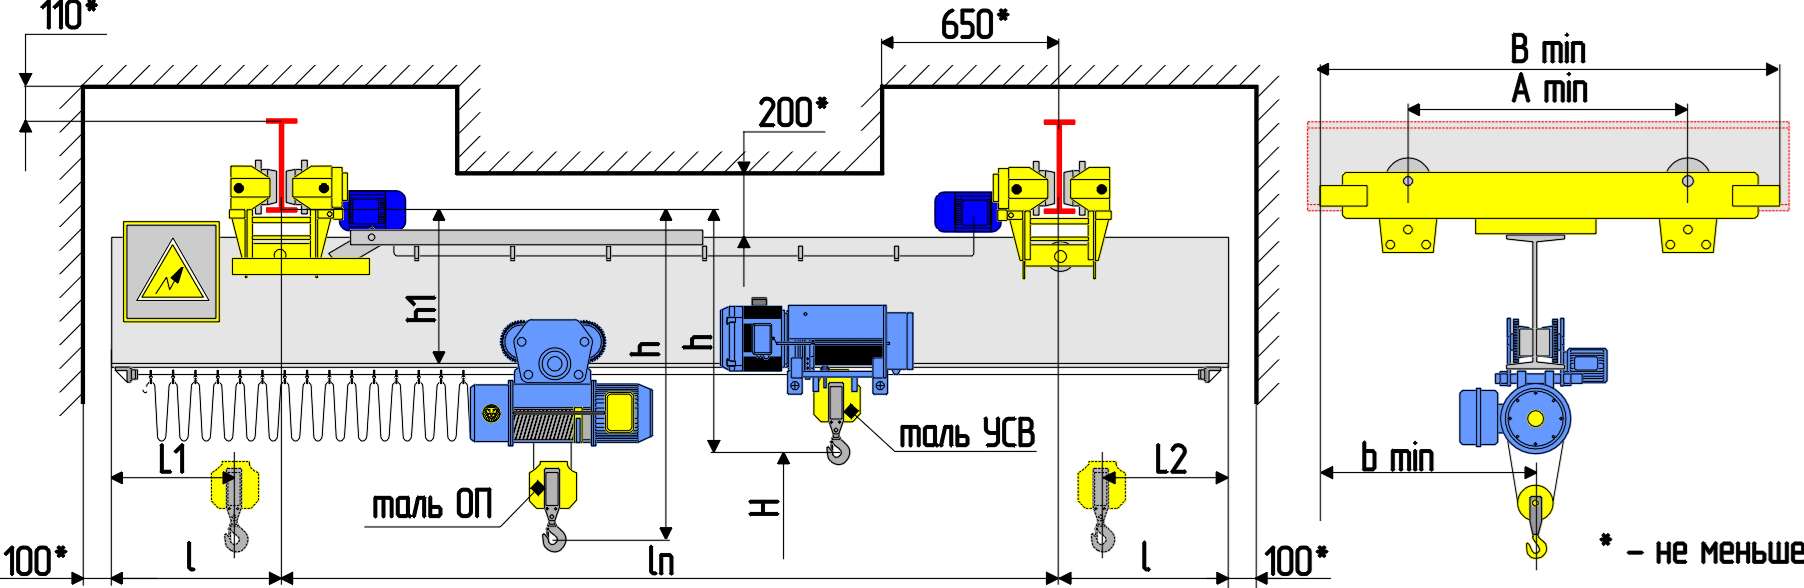 Устройство механизмов мостового крана: электрооборудование, тормозная система, грузовая тележка, механизм подъема, подкрановые пути